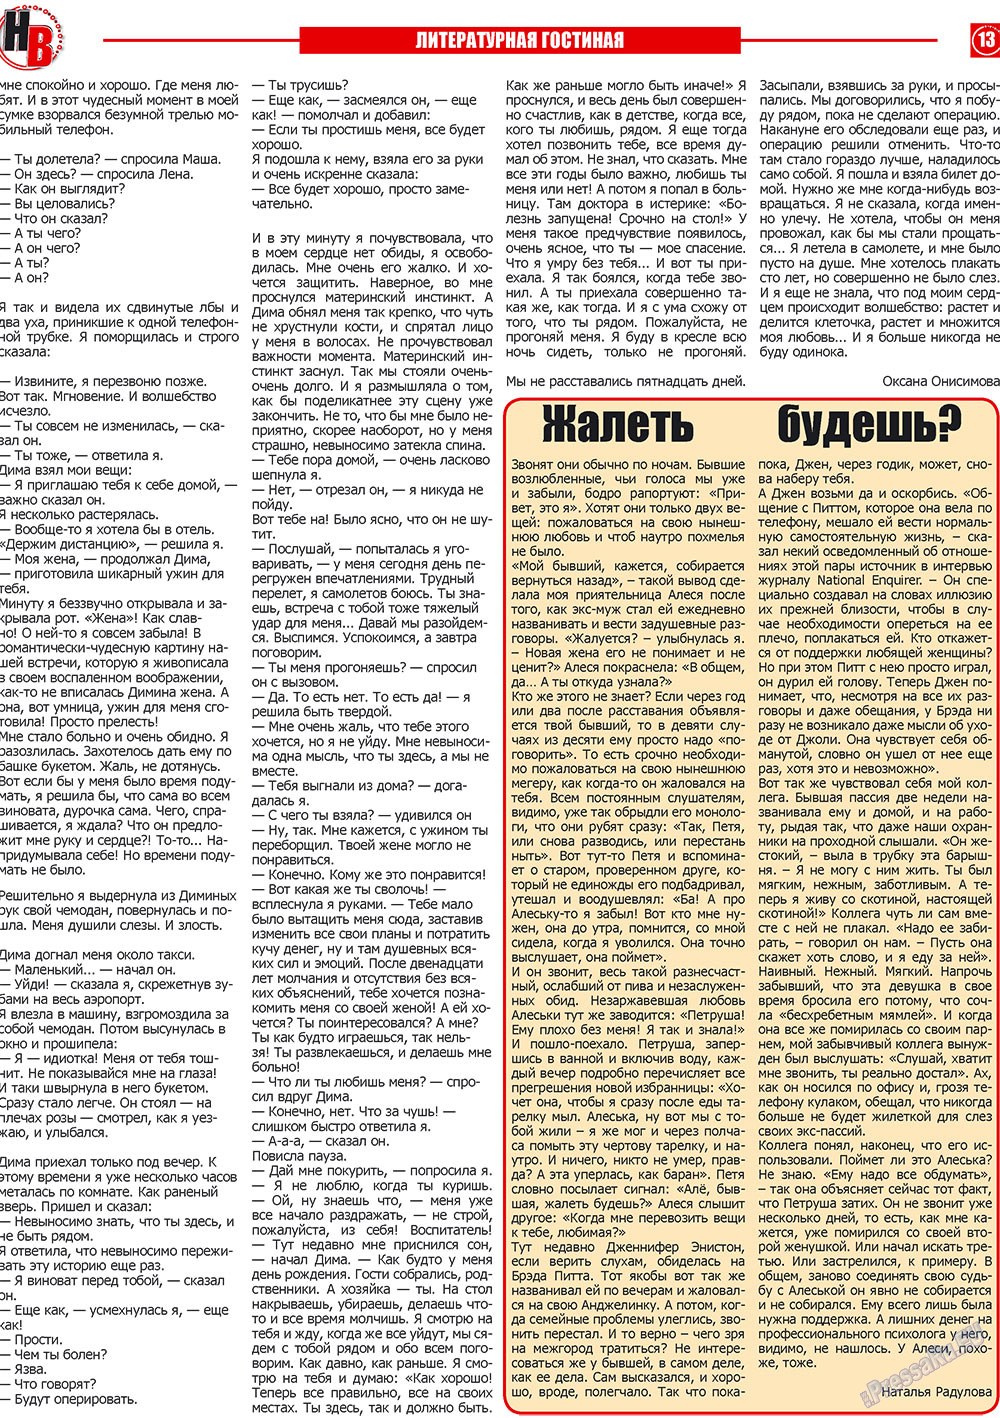 Наше время, газета. 2010 №1 стр.13